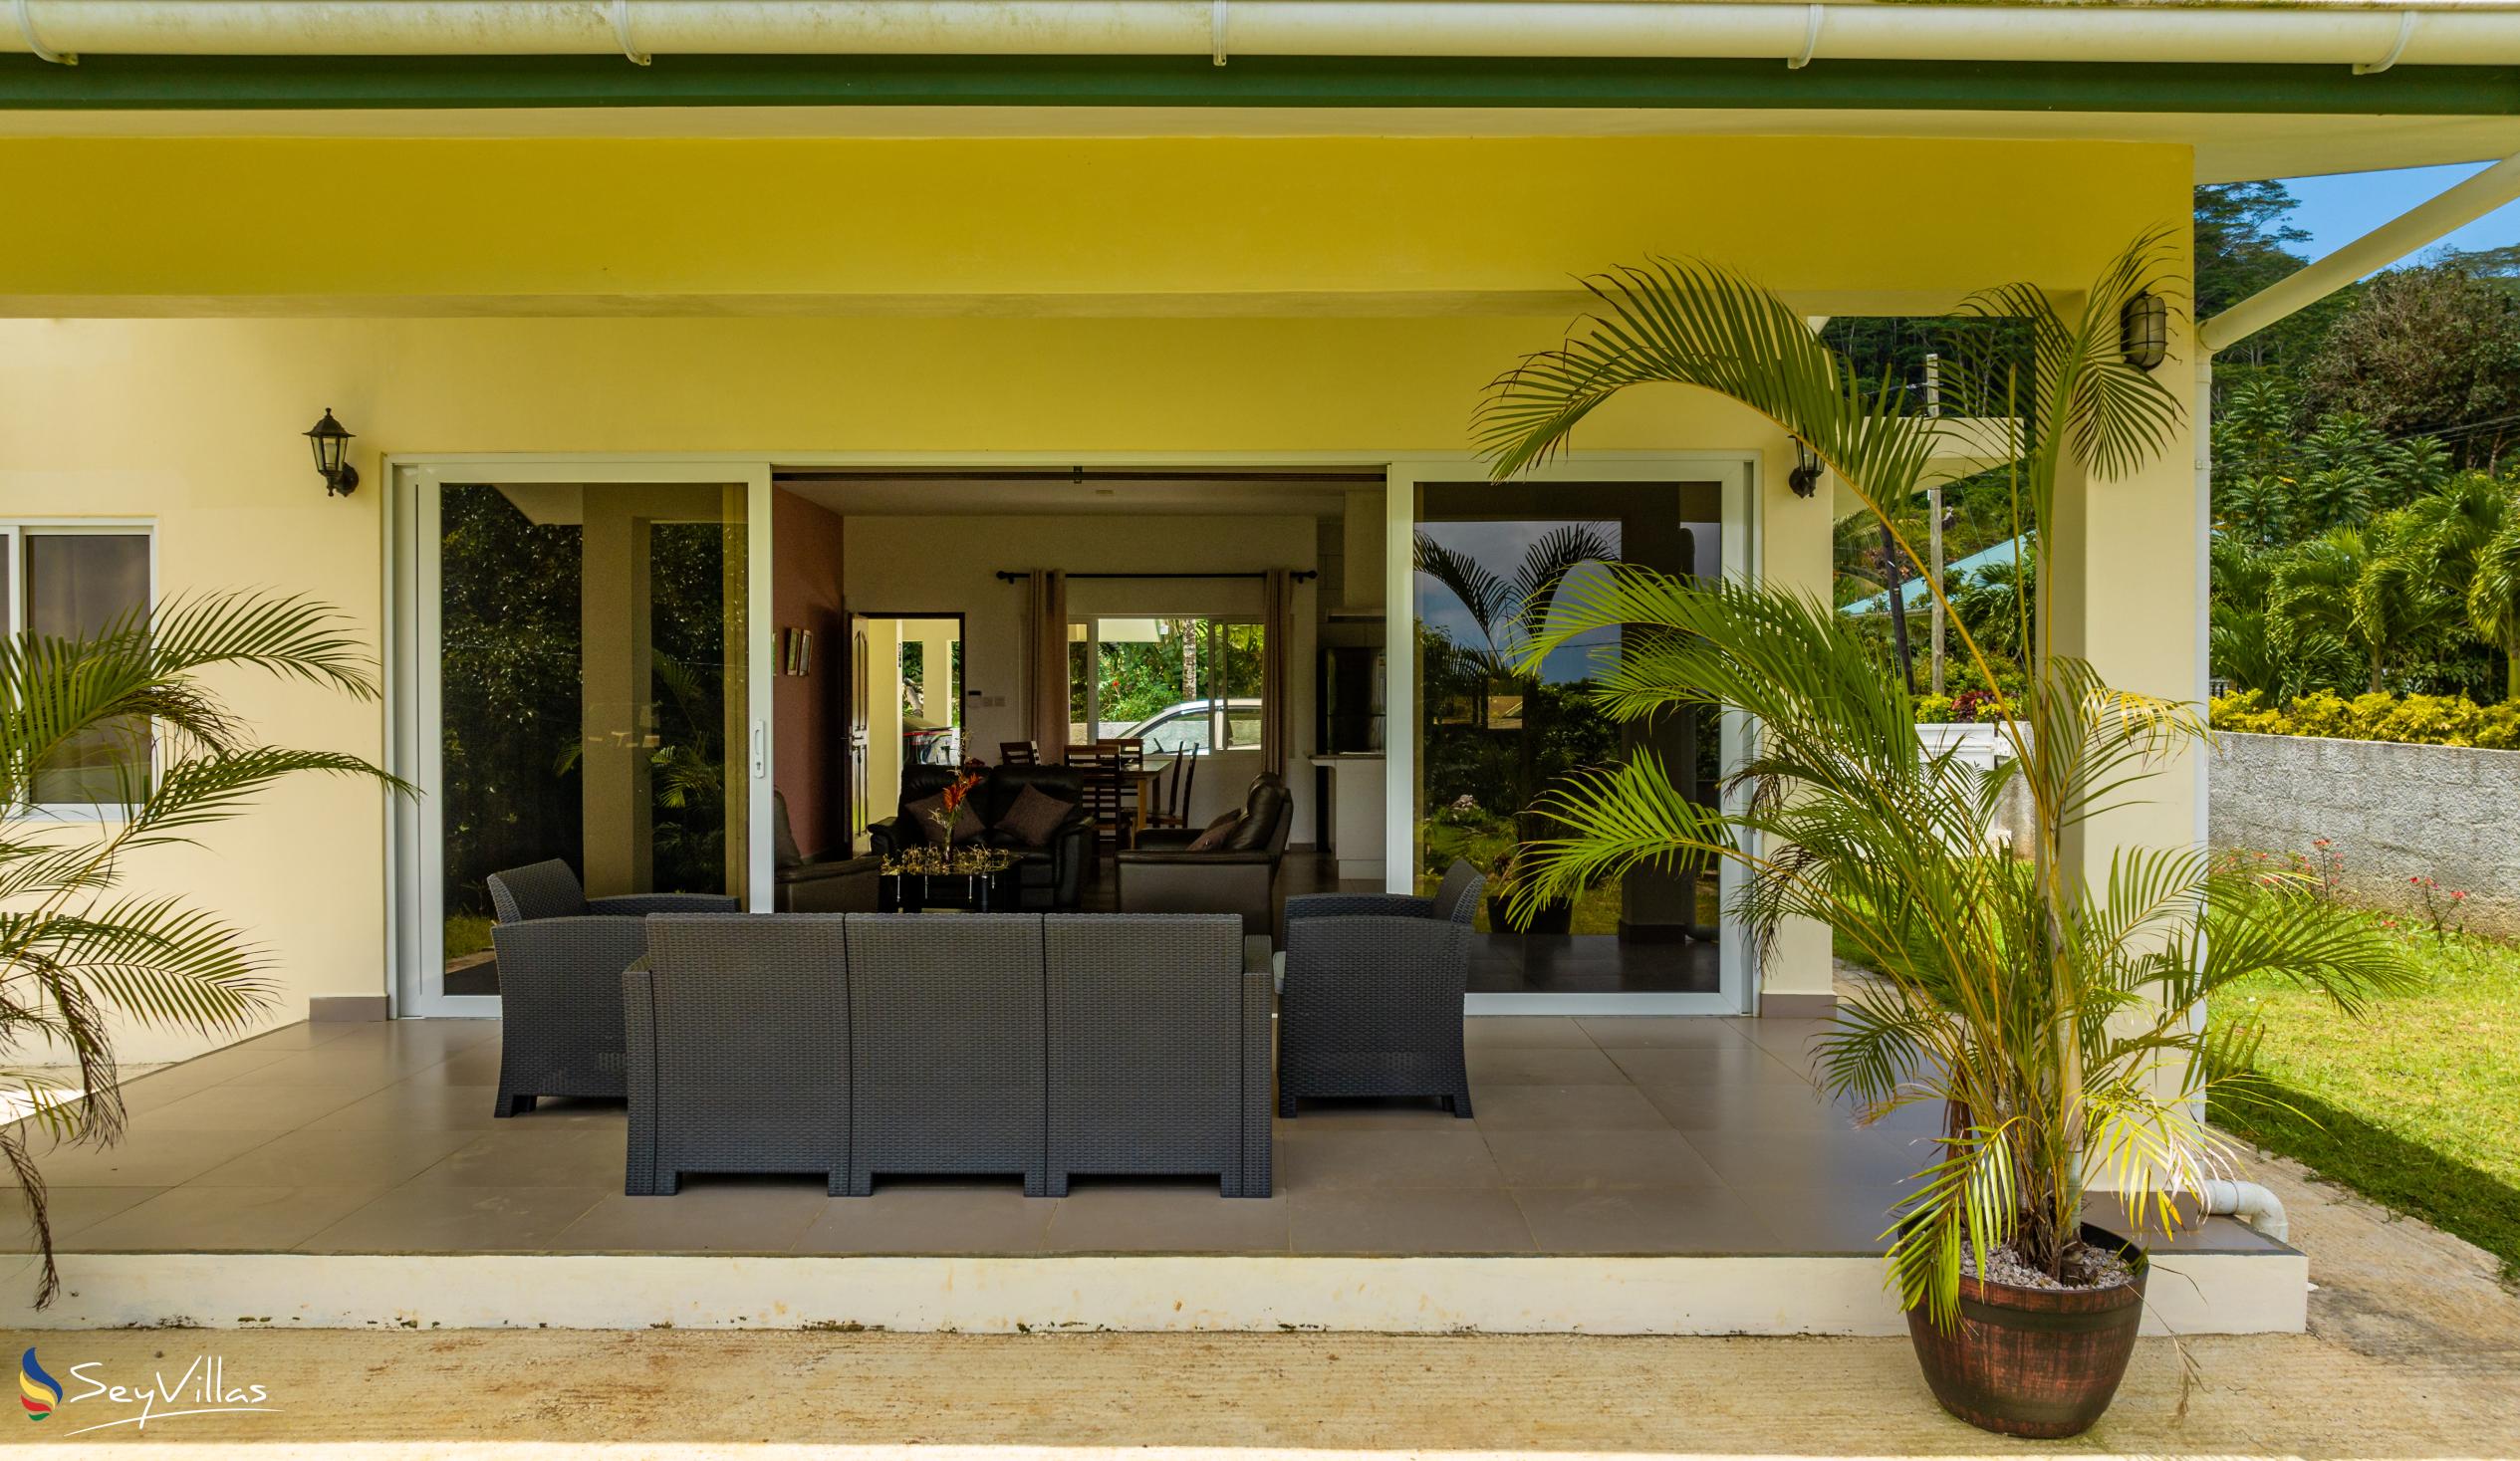 Foto 7: Maison Dora - Extérieur - Mahé (Seychelles)